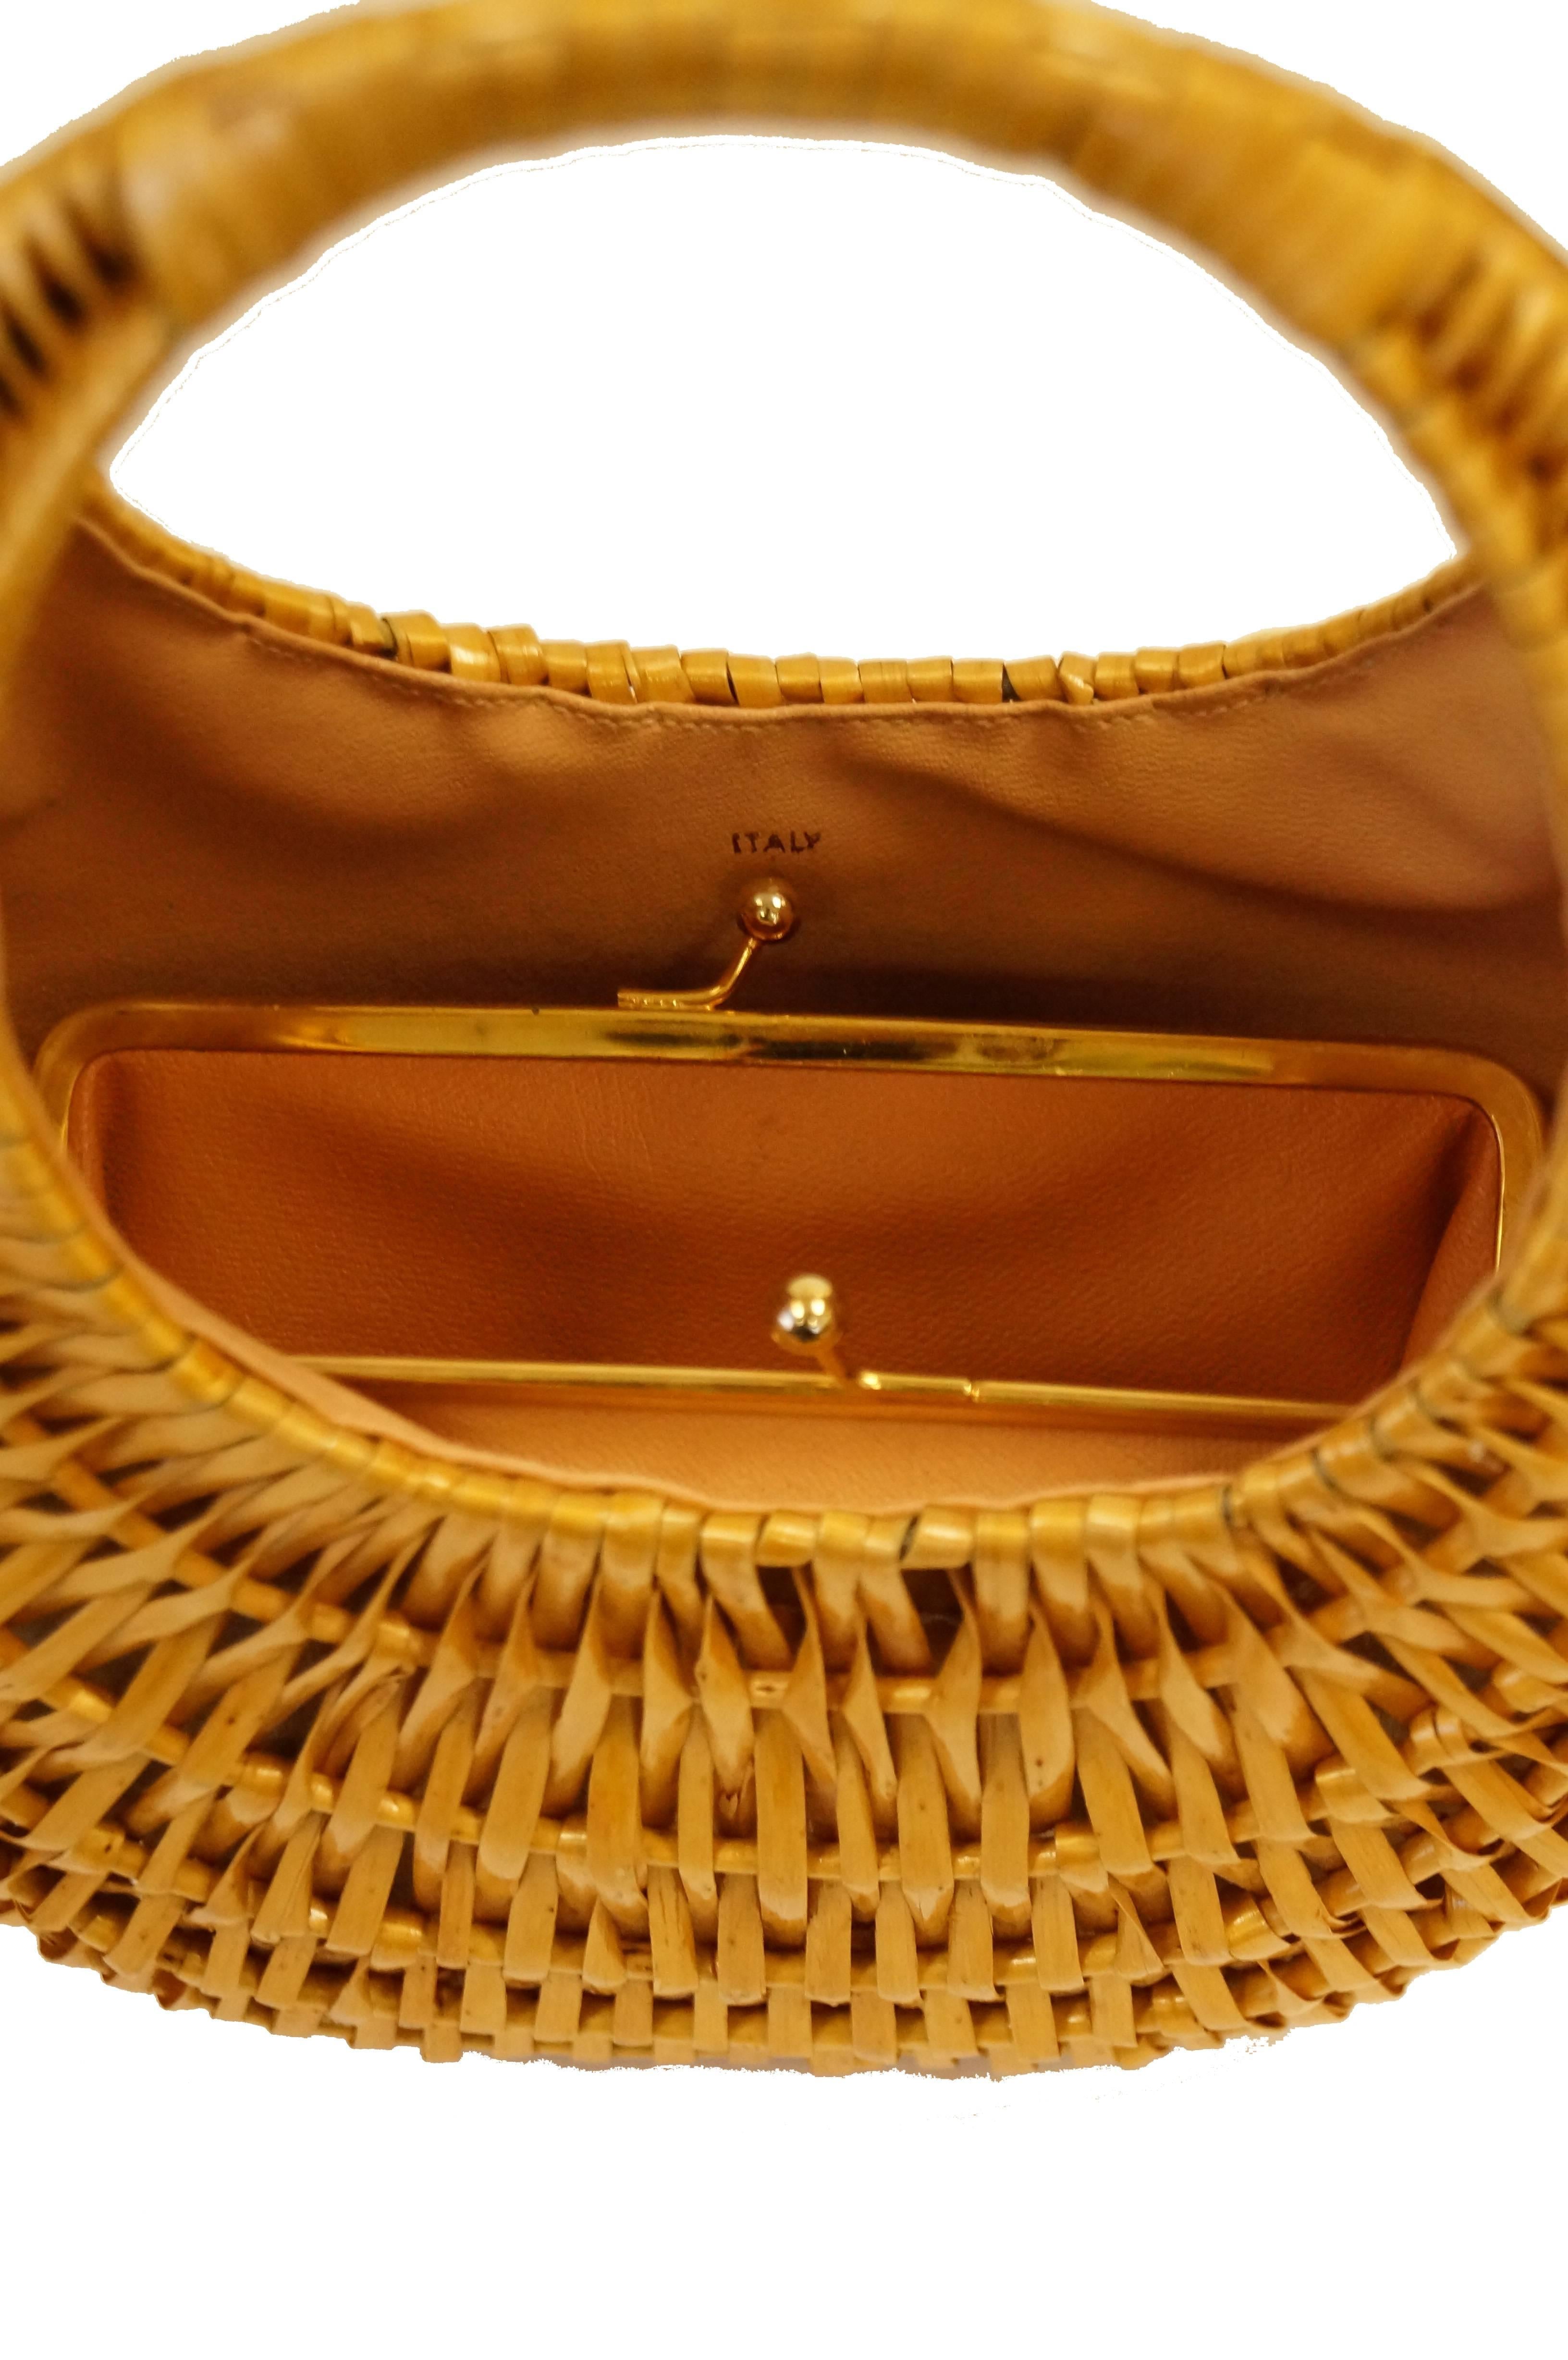  1950s Koret Crescent Flat Reed Basket Handbag with Gold Tassel 4